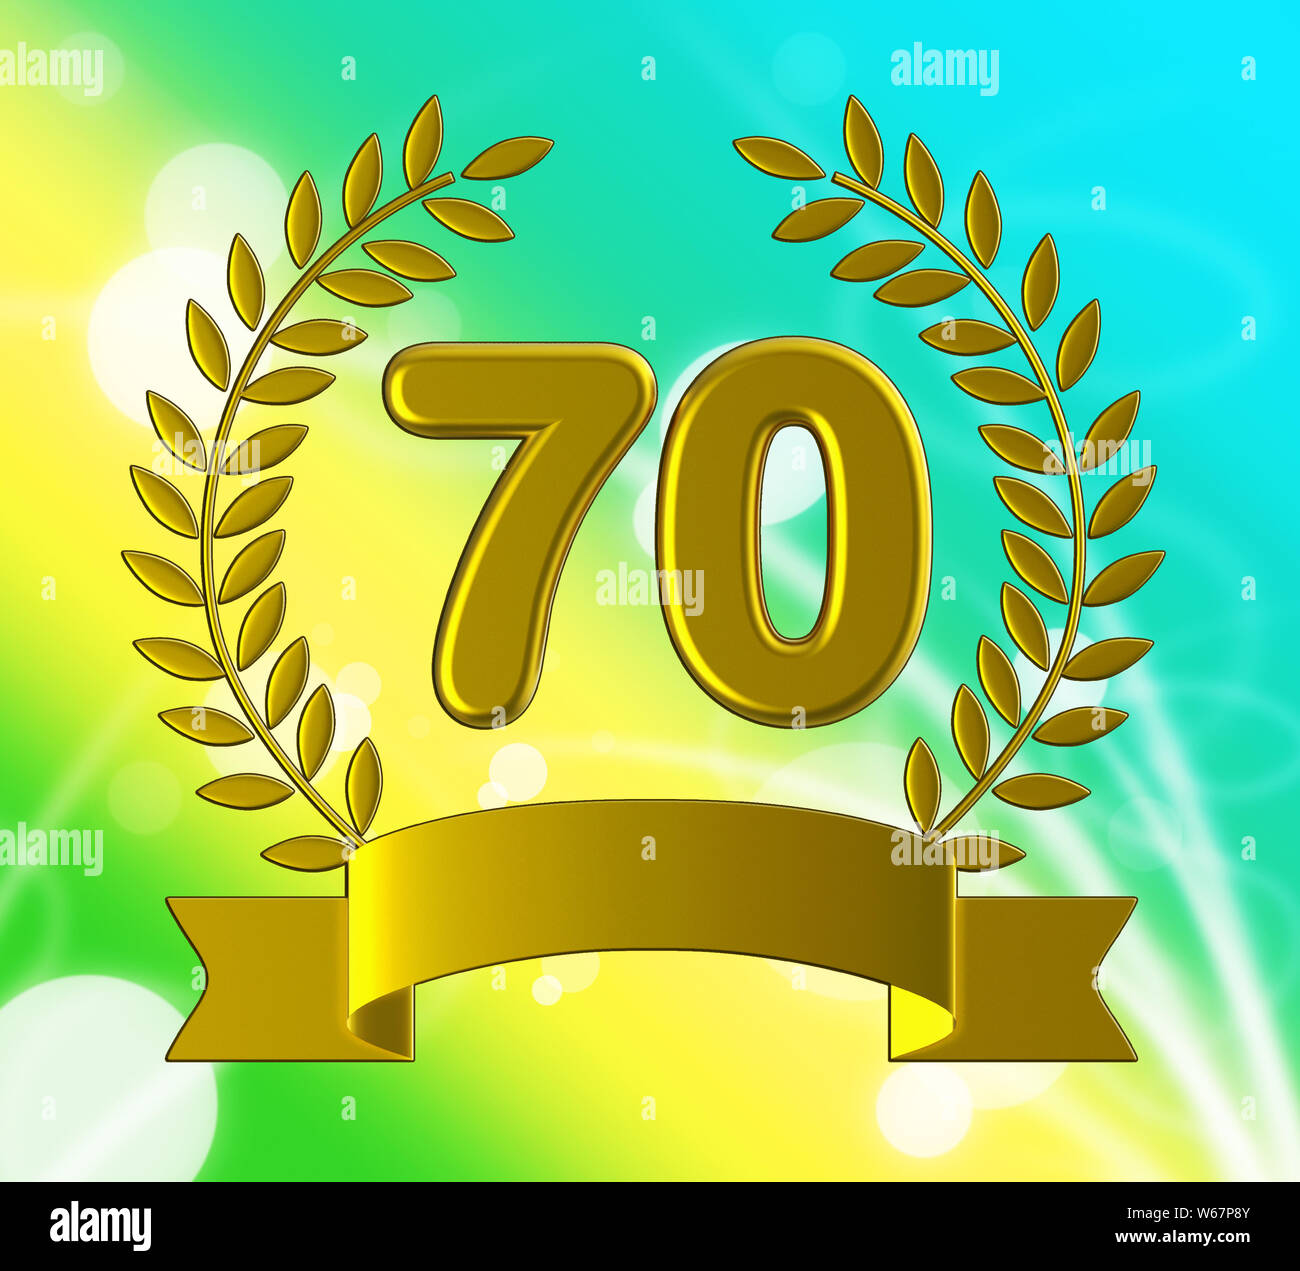 Siebzigsten Jahrestag Feier zeigt Feiern und Grüße für die Ehe. 70. Jahr der Ehe Gratulation - 3D-Darstellung Stockfoto